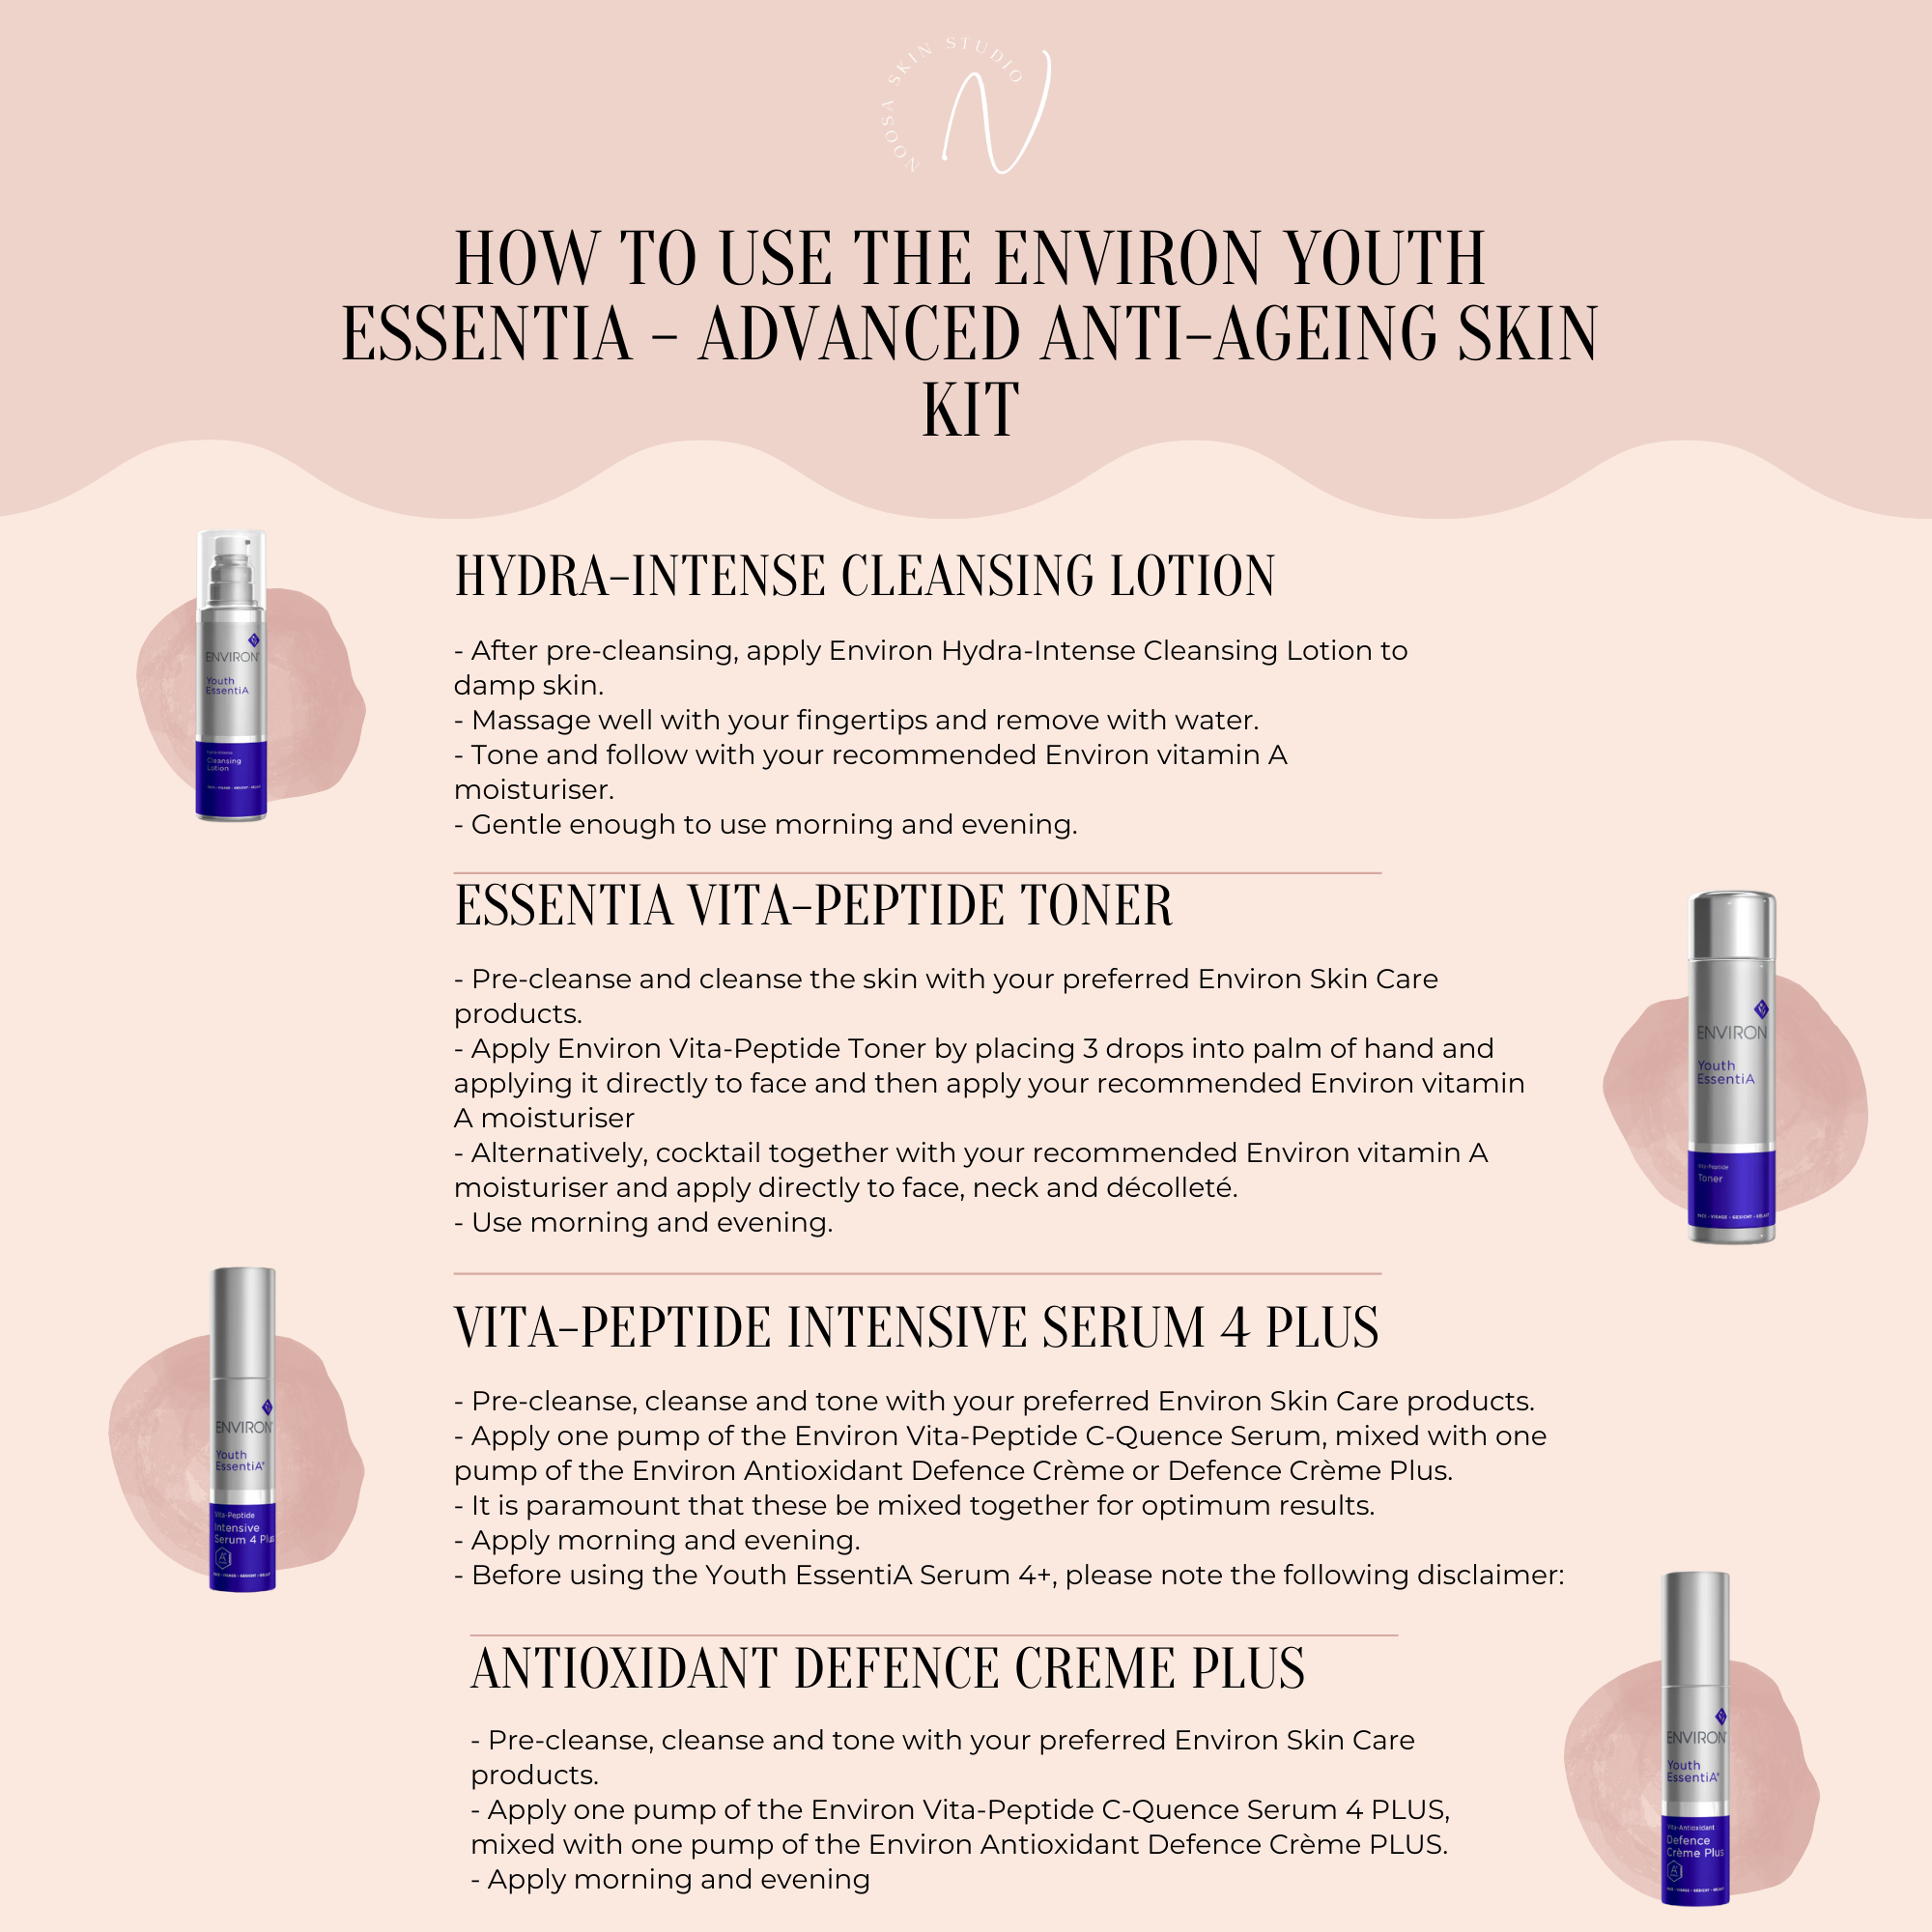 Environ Youth EssentiA - Advanced Anti-Ageing Skin Kit